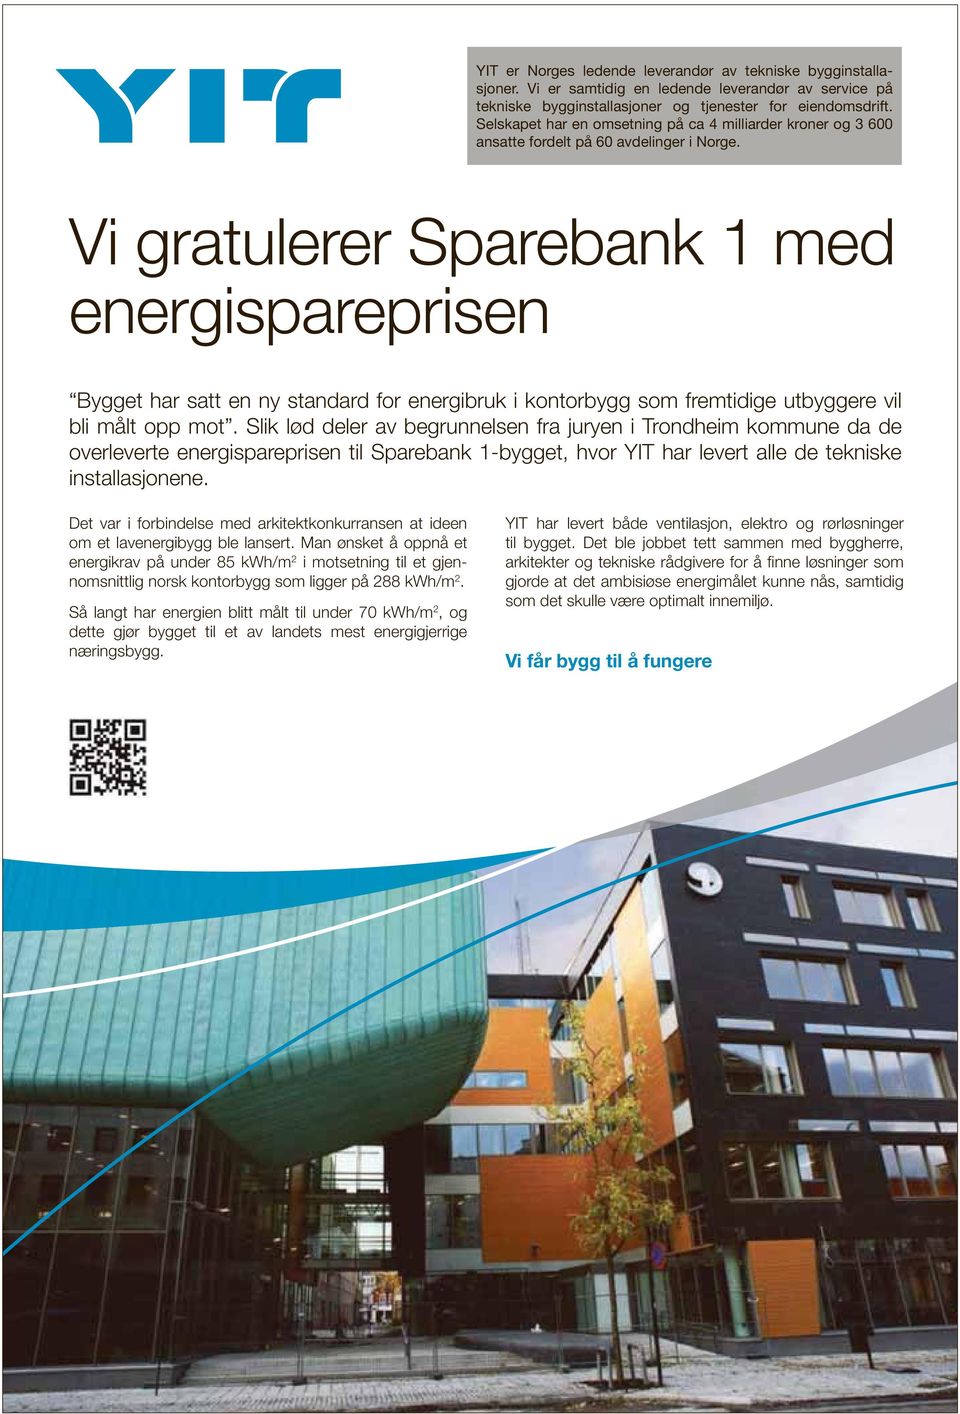 Vi gratulerer Sparebank 1 med energispareprisen Bygget har satt en ny standard for energibruk i kontorbygg som fremtidige utbyggere vil bli målt opp mot.